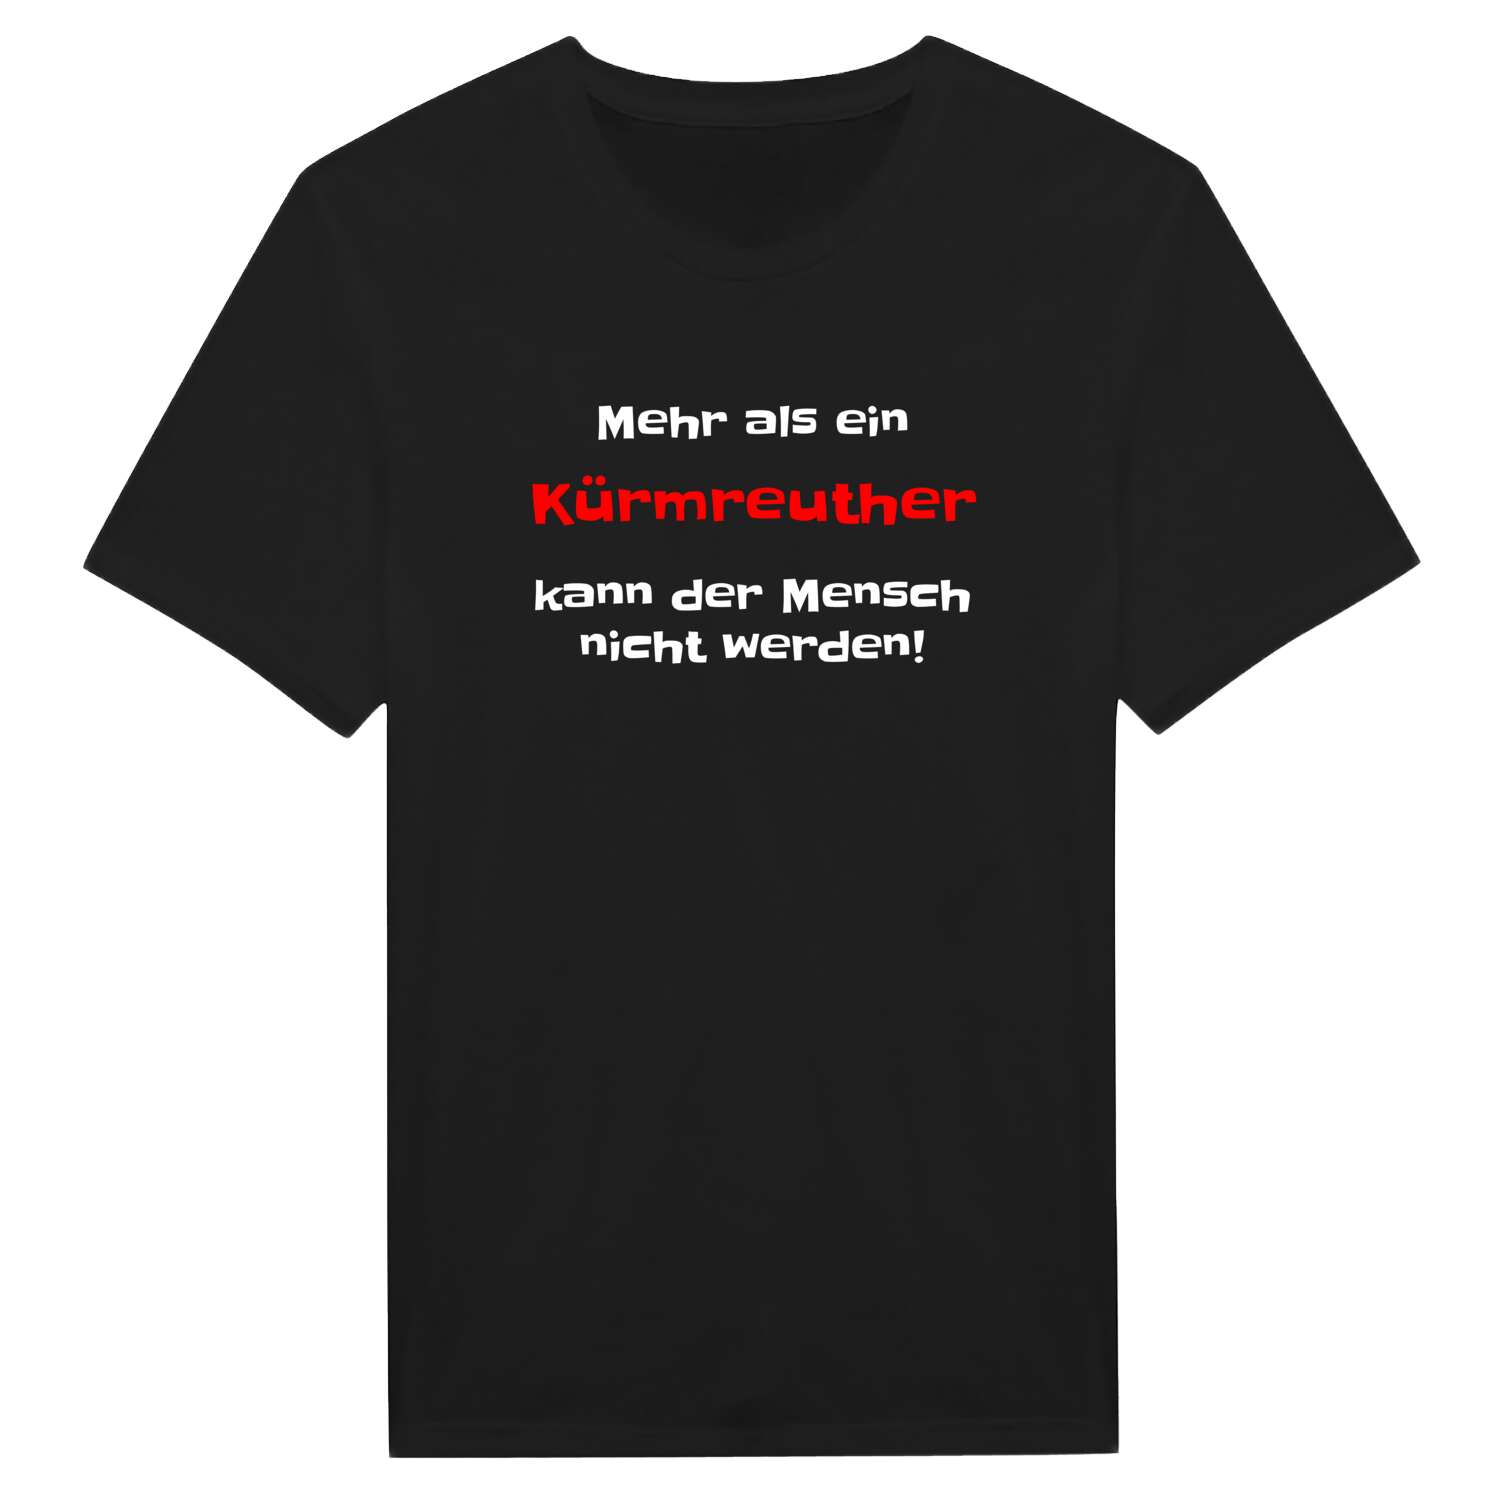 Kürmreuth T-Shirt »Mehr als ein«